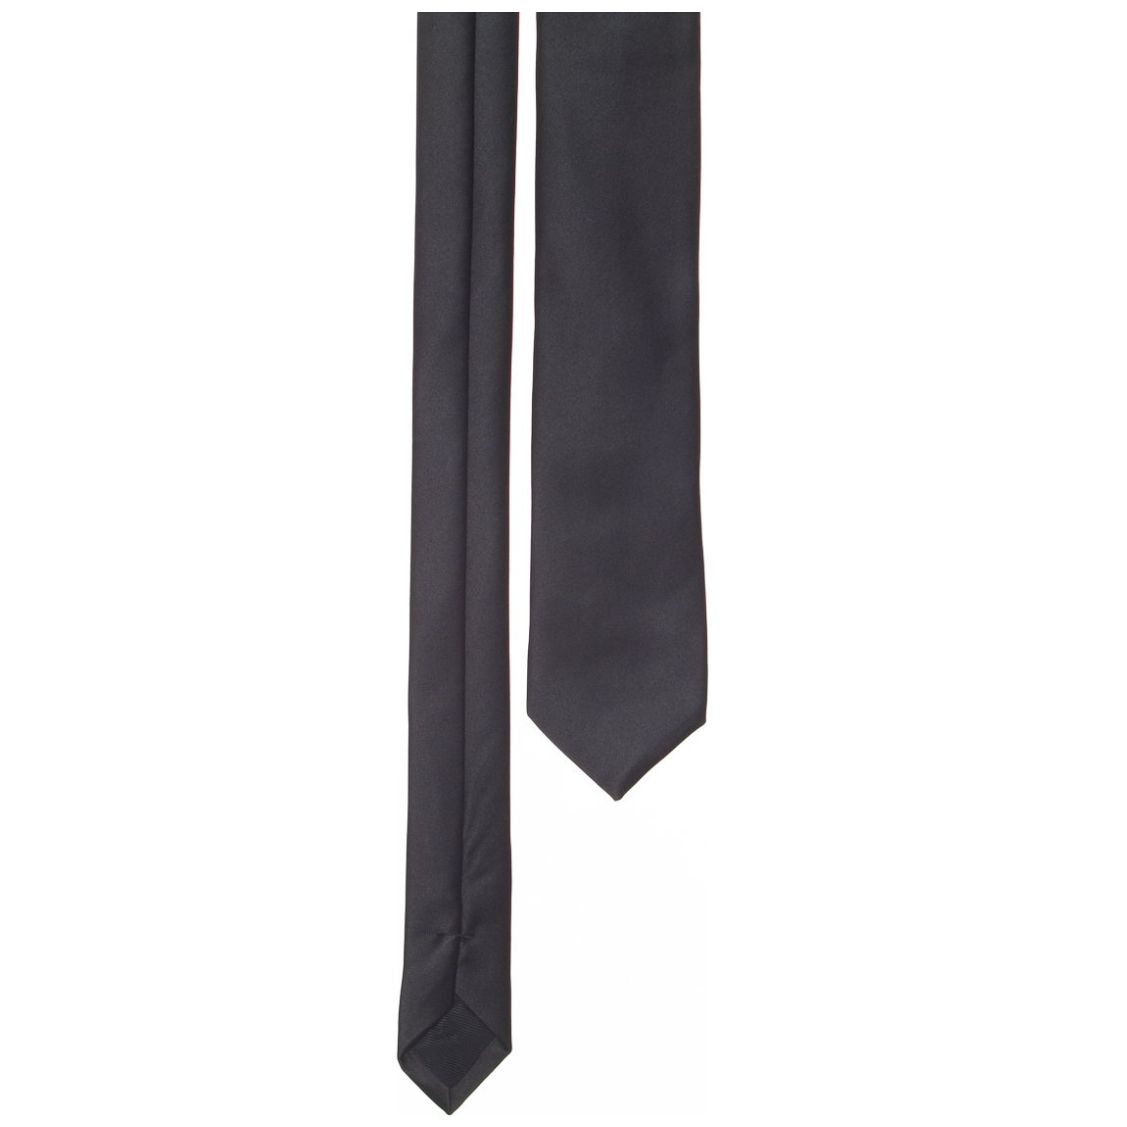 Corbata estrecha negra de tela lisa sin dibujo